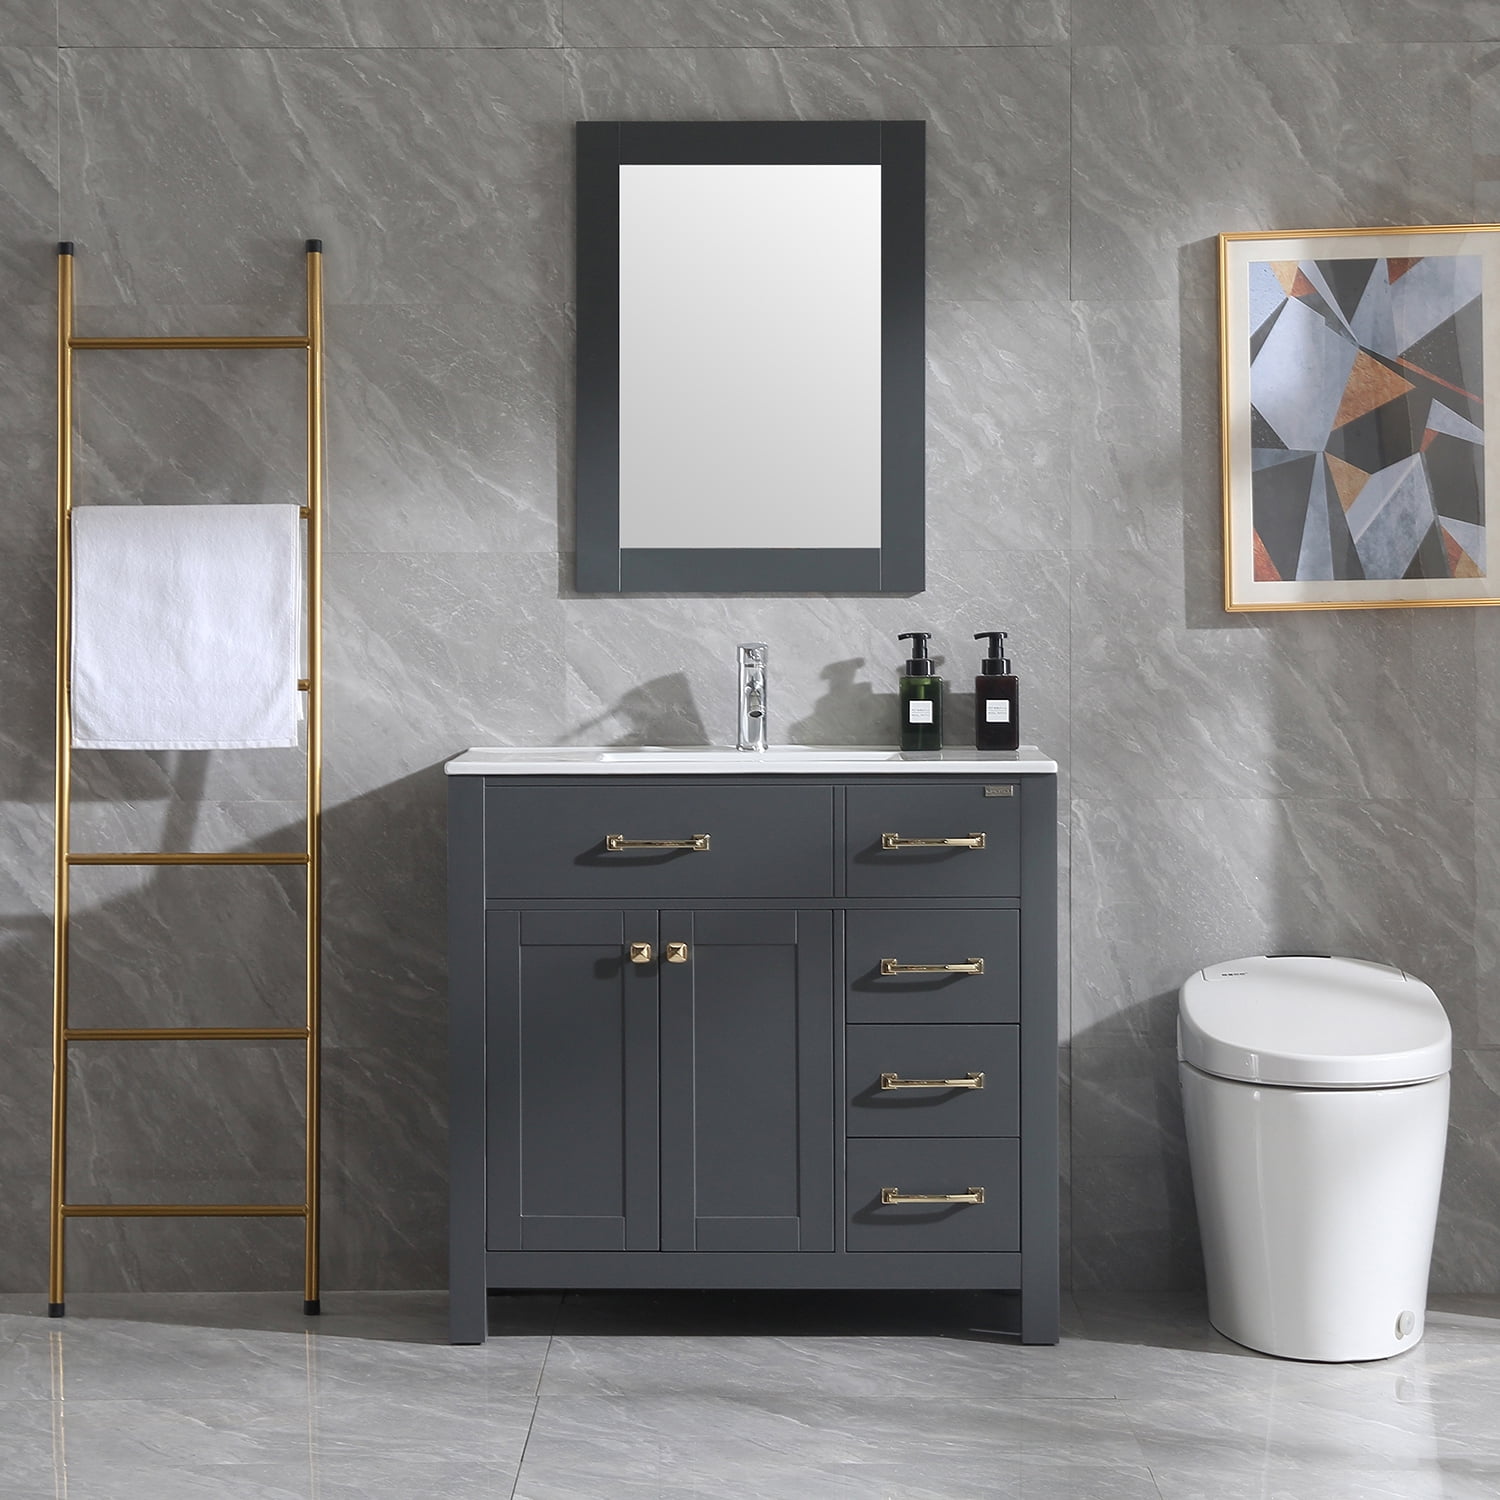 W 36 Bathroom Vanity Cabinet, White Shaker Bathroom Vanity 36